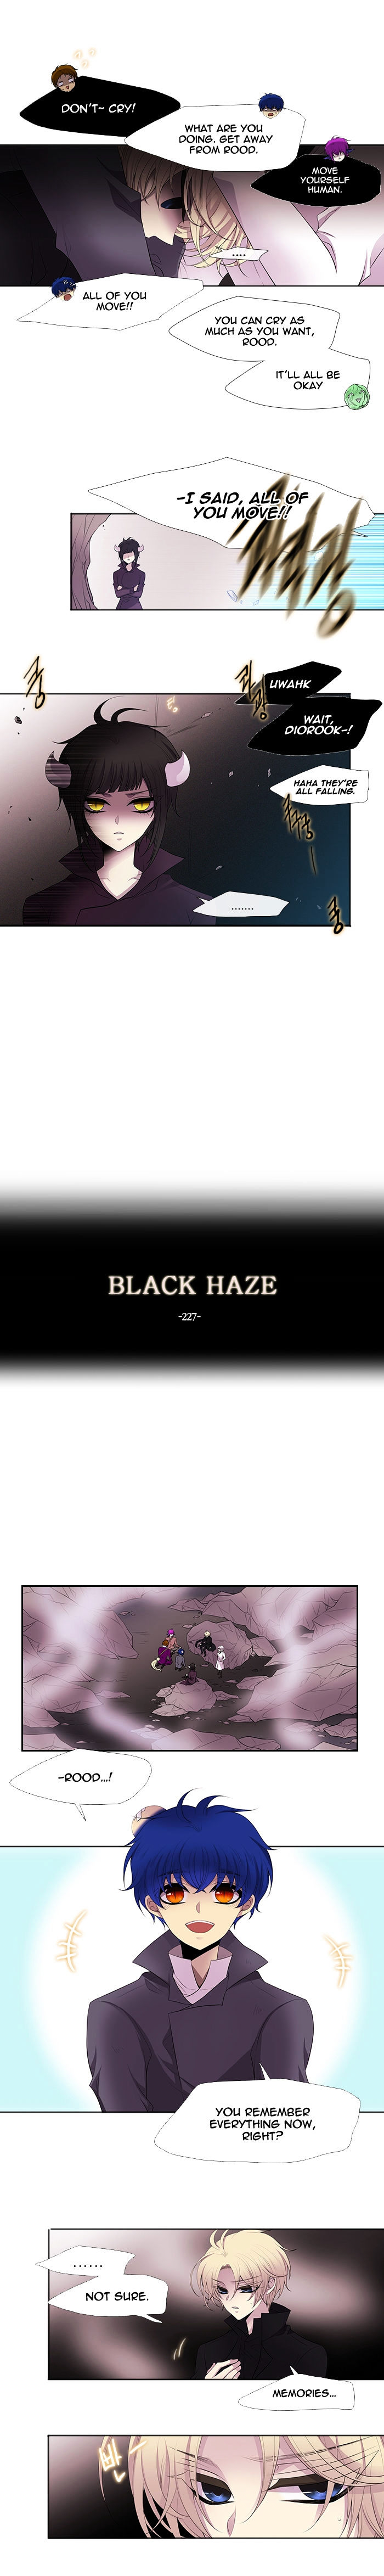 black_haze_227_4